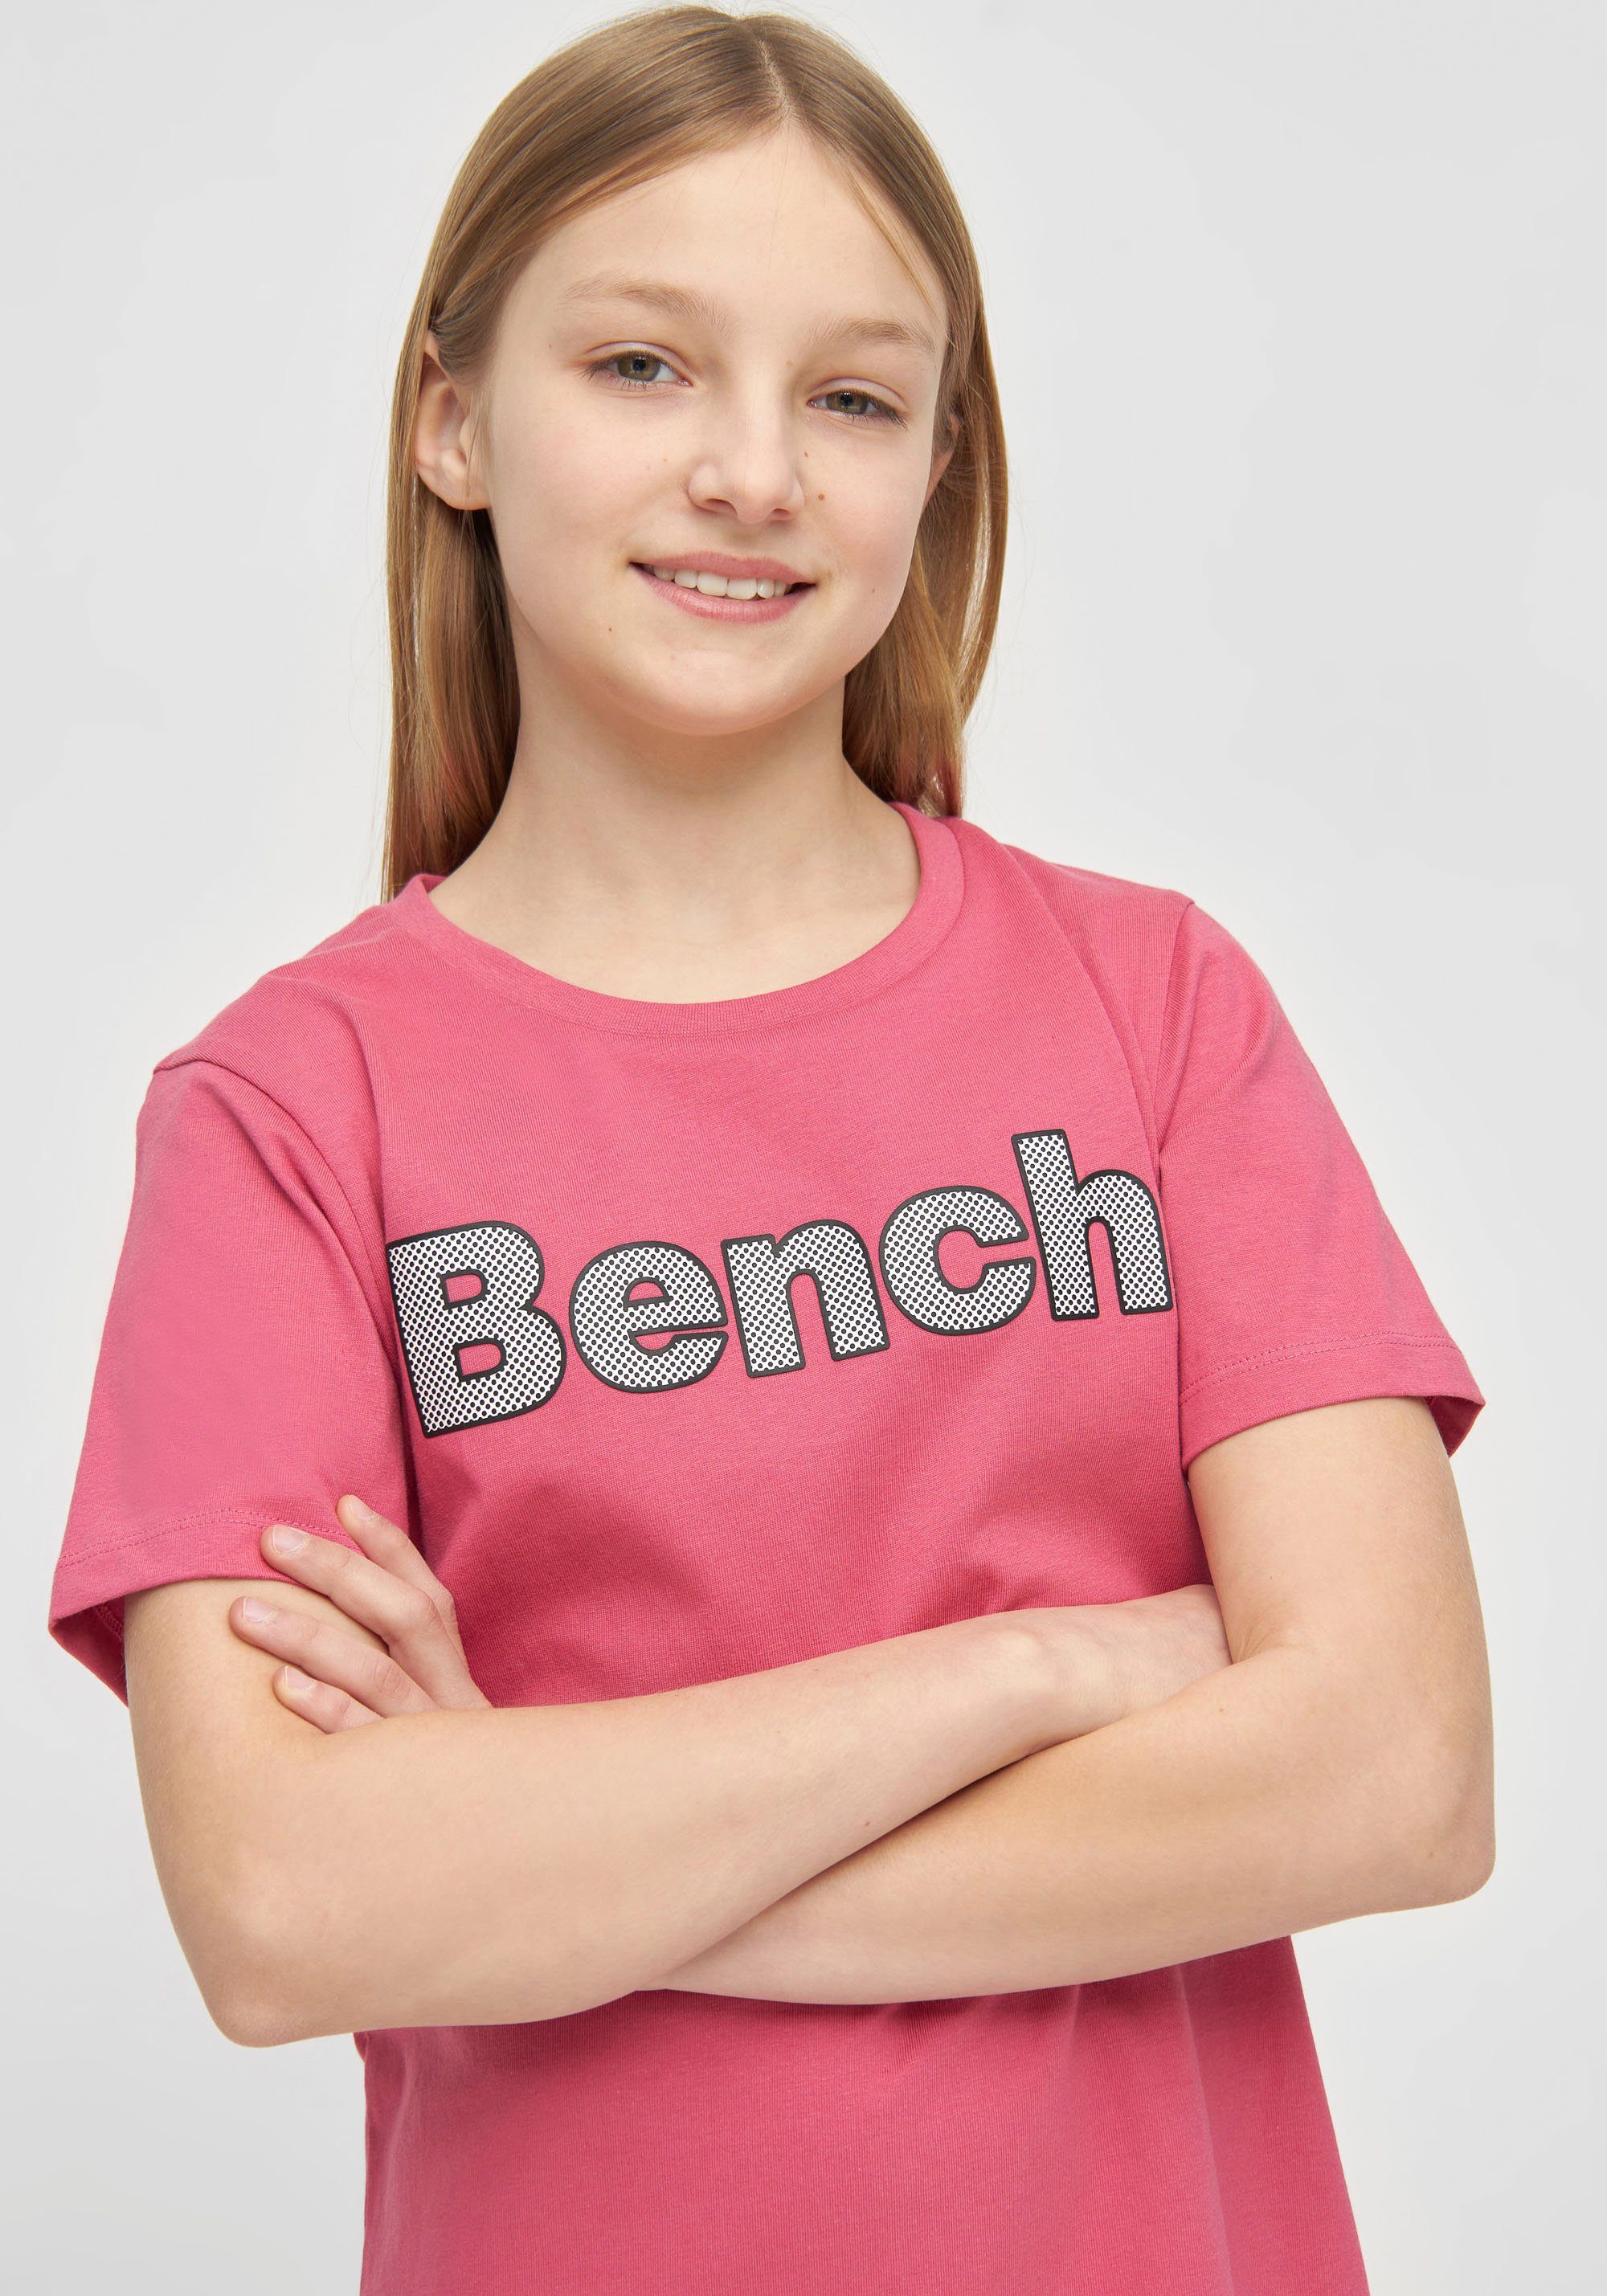 mit Bench. JINAG Logodruck T-Shirt